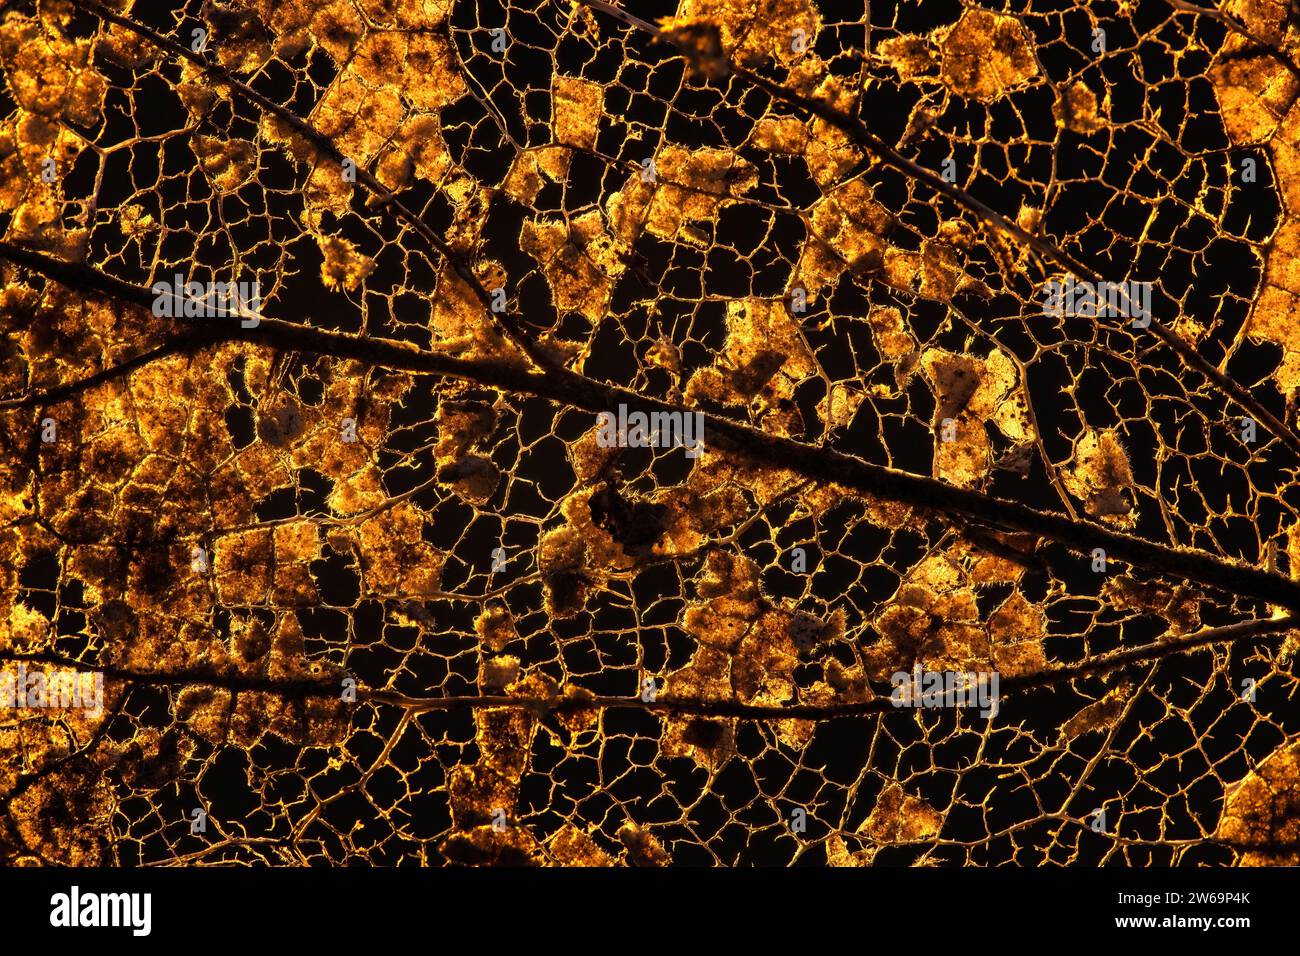 Vue microscopique d'une feuille en décomposition, avec des réseaux complexes révélés lorsque les bactéries consomment la matière foliaire, ne laissant que les veines Banque D'Images